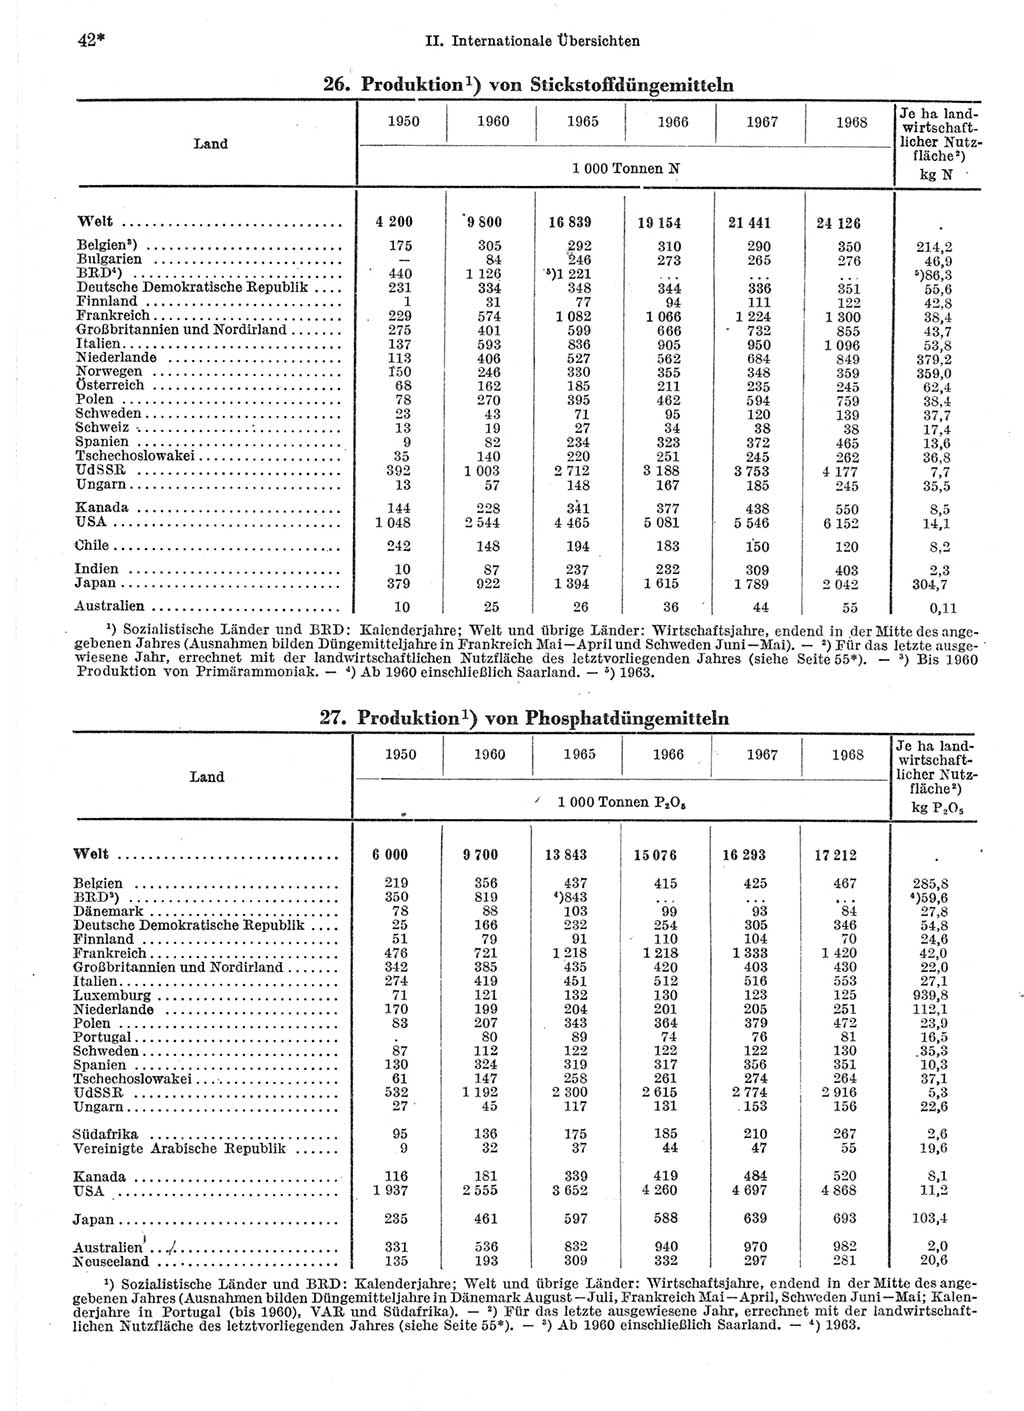 Statistisches Jahrbuch der Deutschen Demokratischen Republik (DDR) 1970, Seite 42 (Stat. Jb. DDR 1970, S. 42)